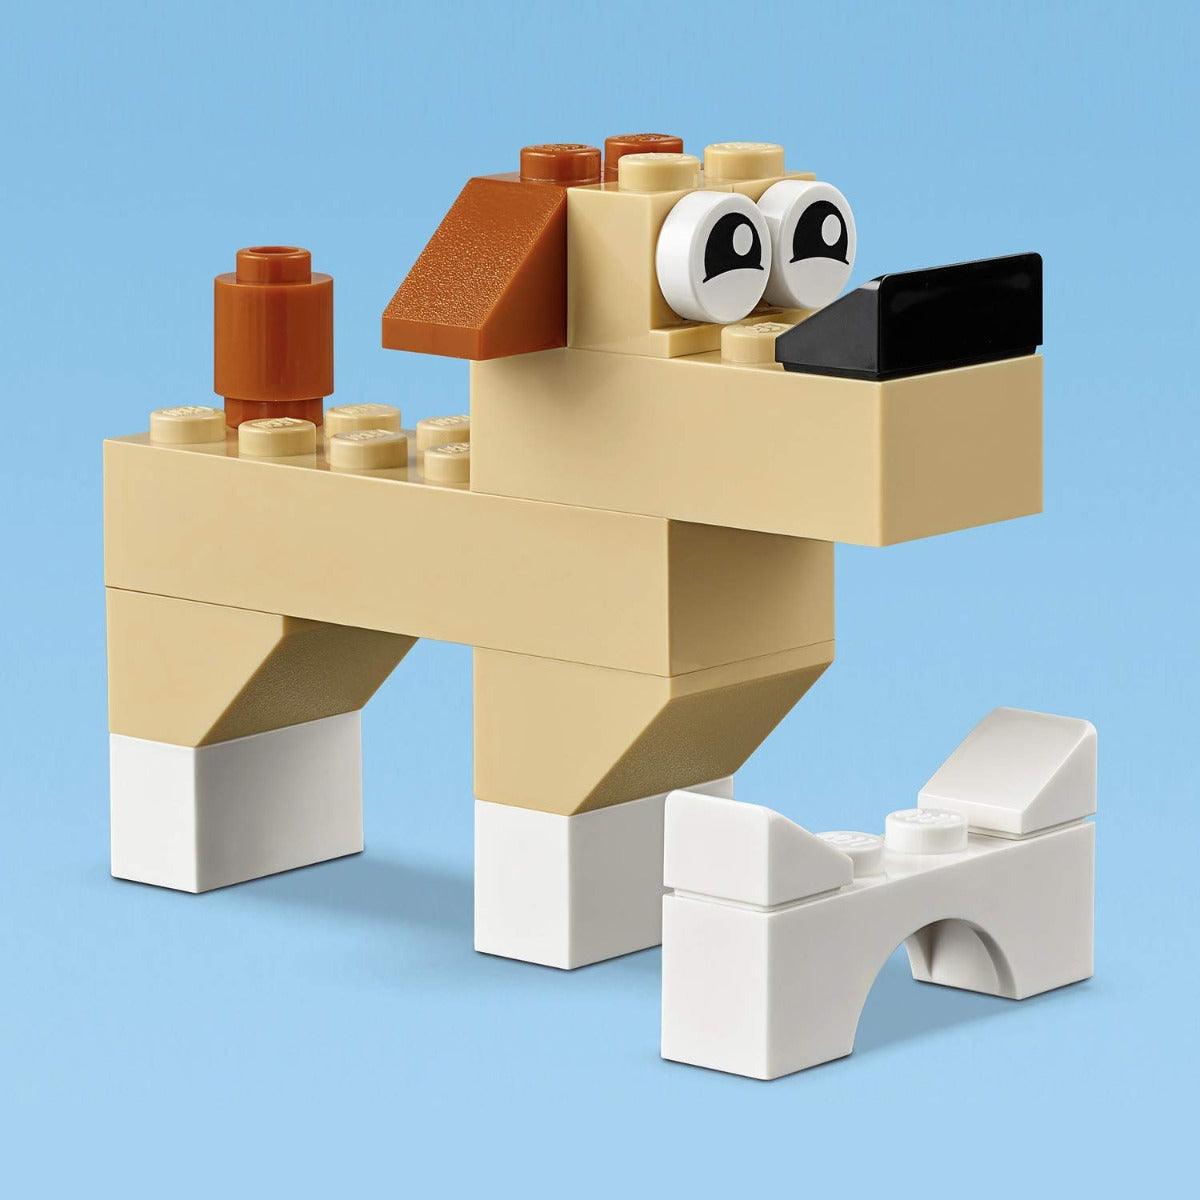 LEGO Classic Basic Brick Set